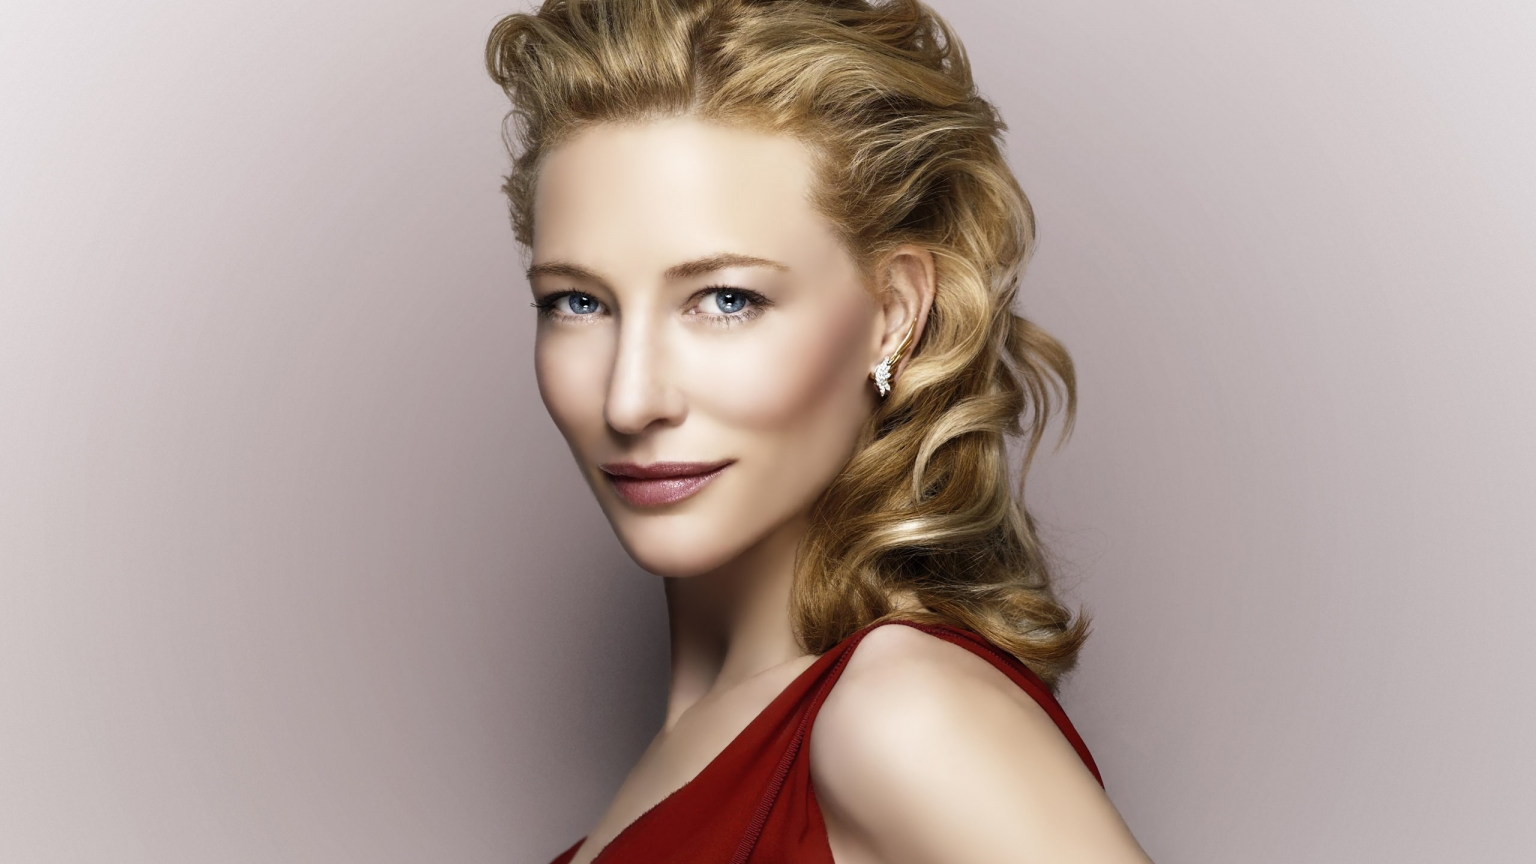 Cate Blanchett for 1536 x 864 HDTV resolution